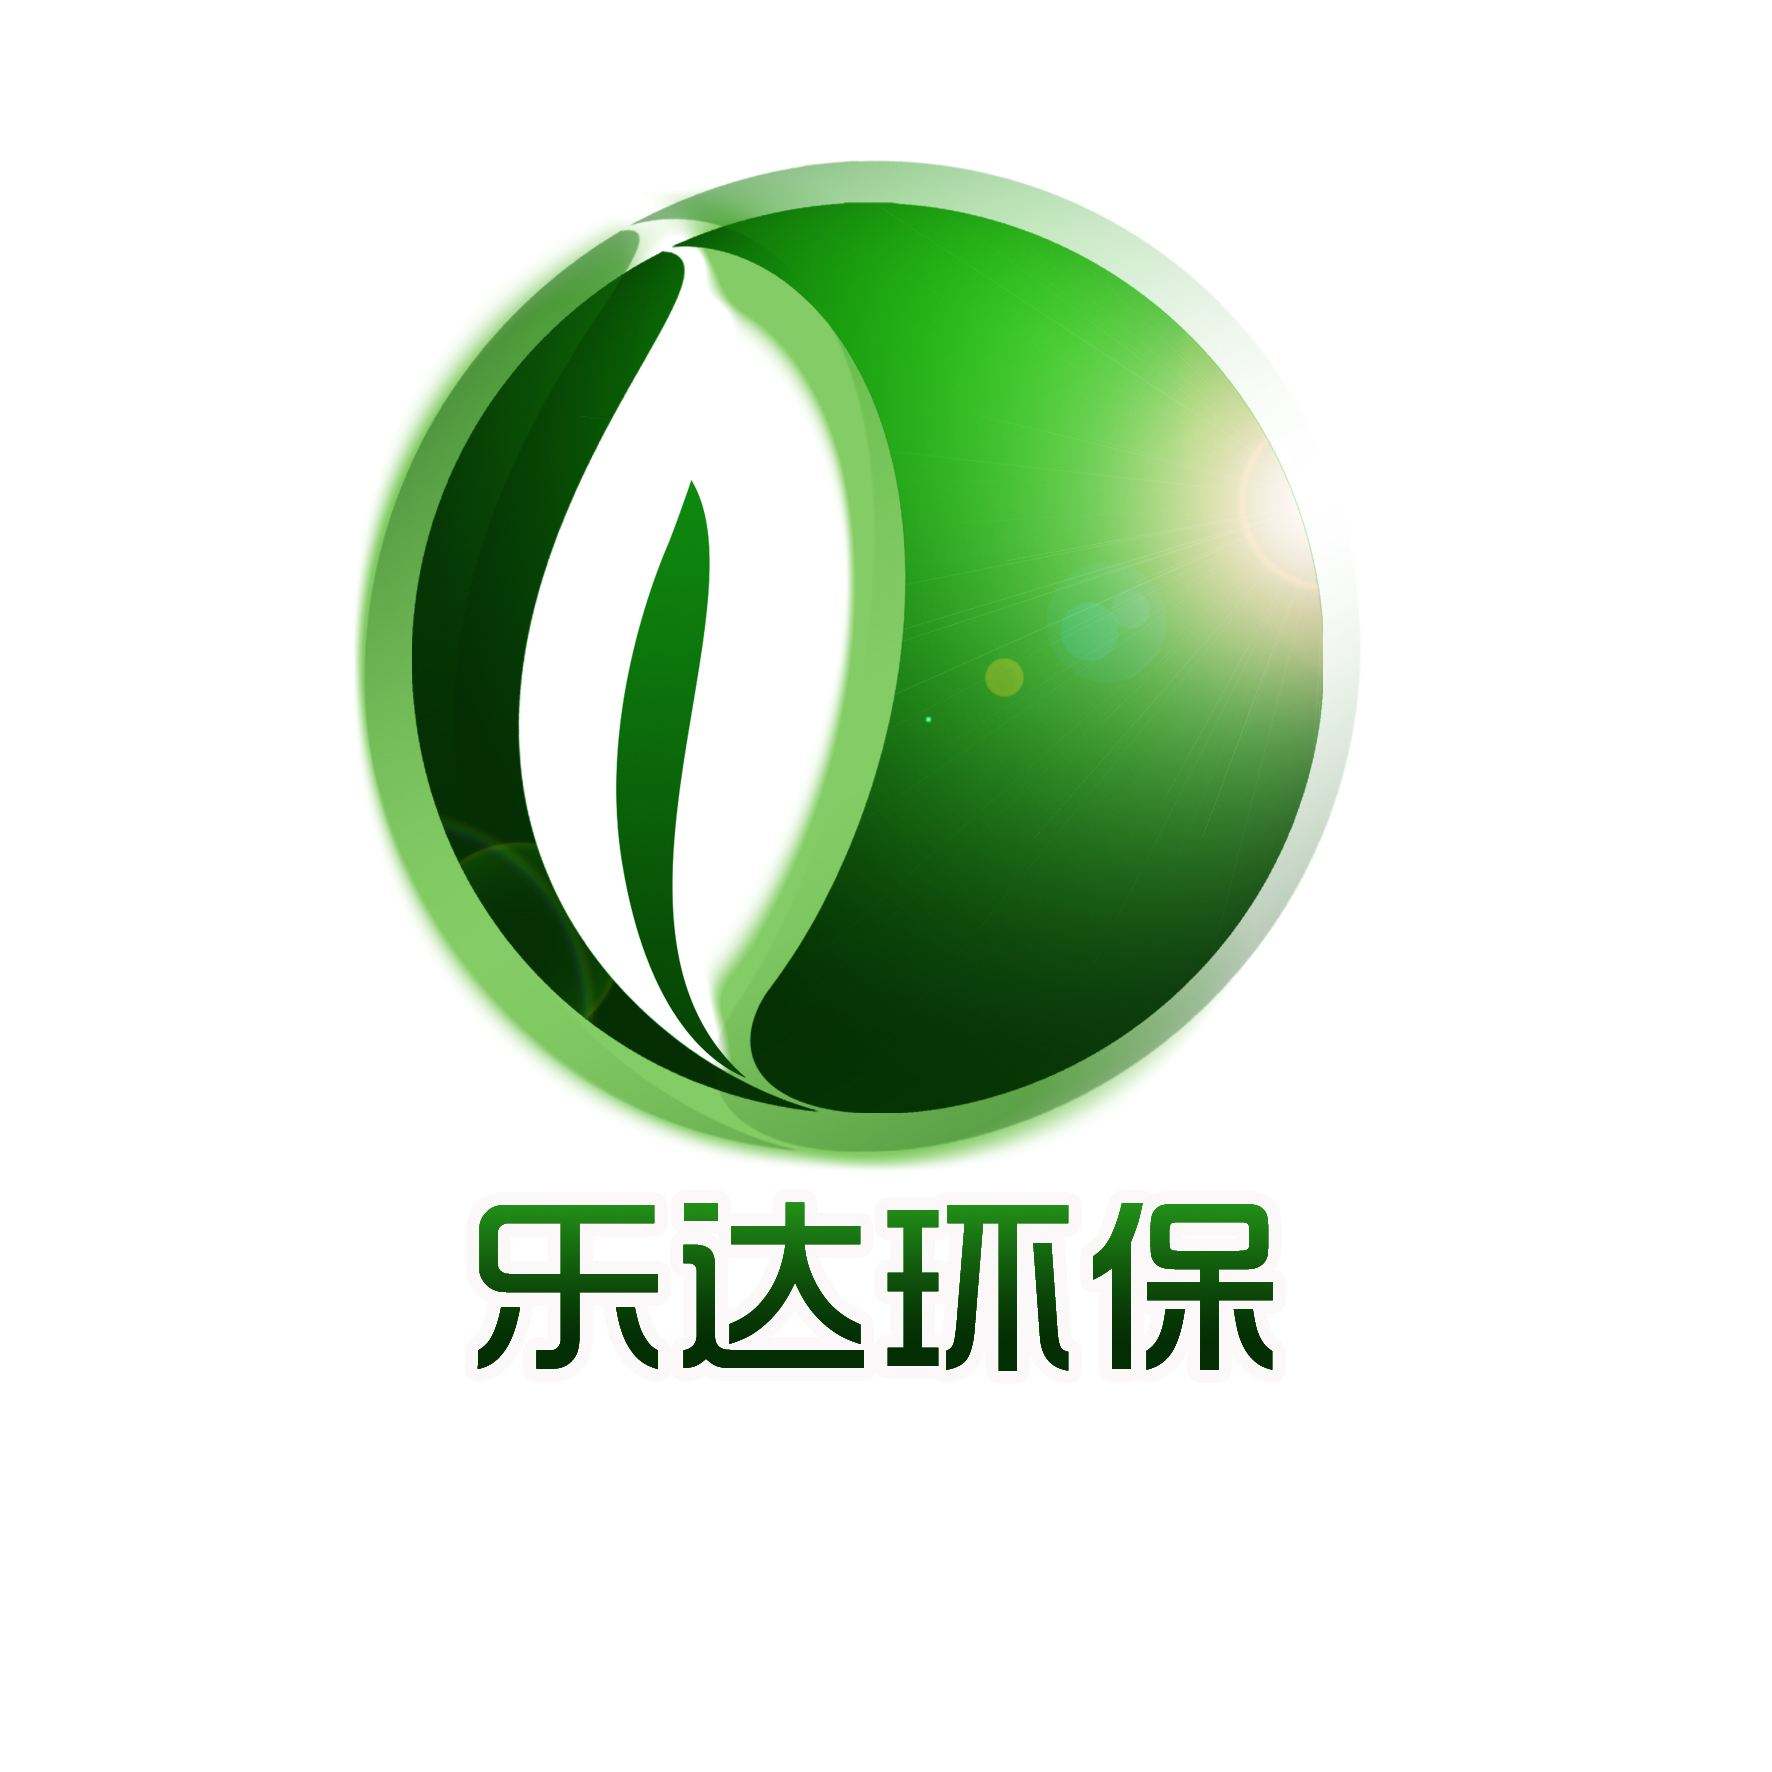 郑州乐达环保科技有限公司